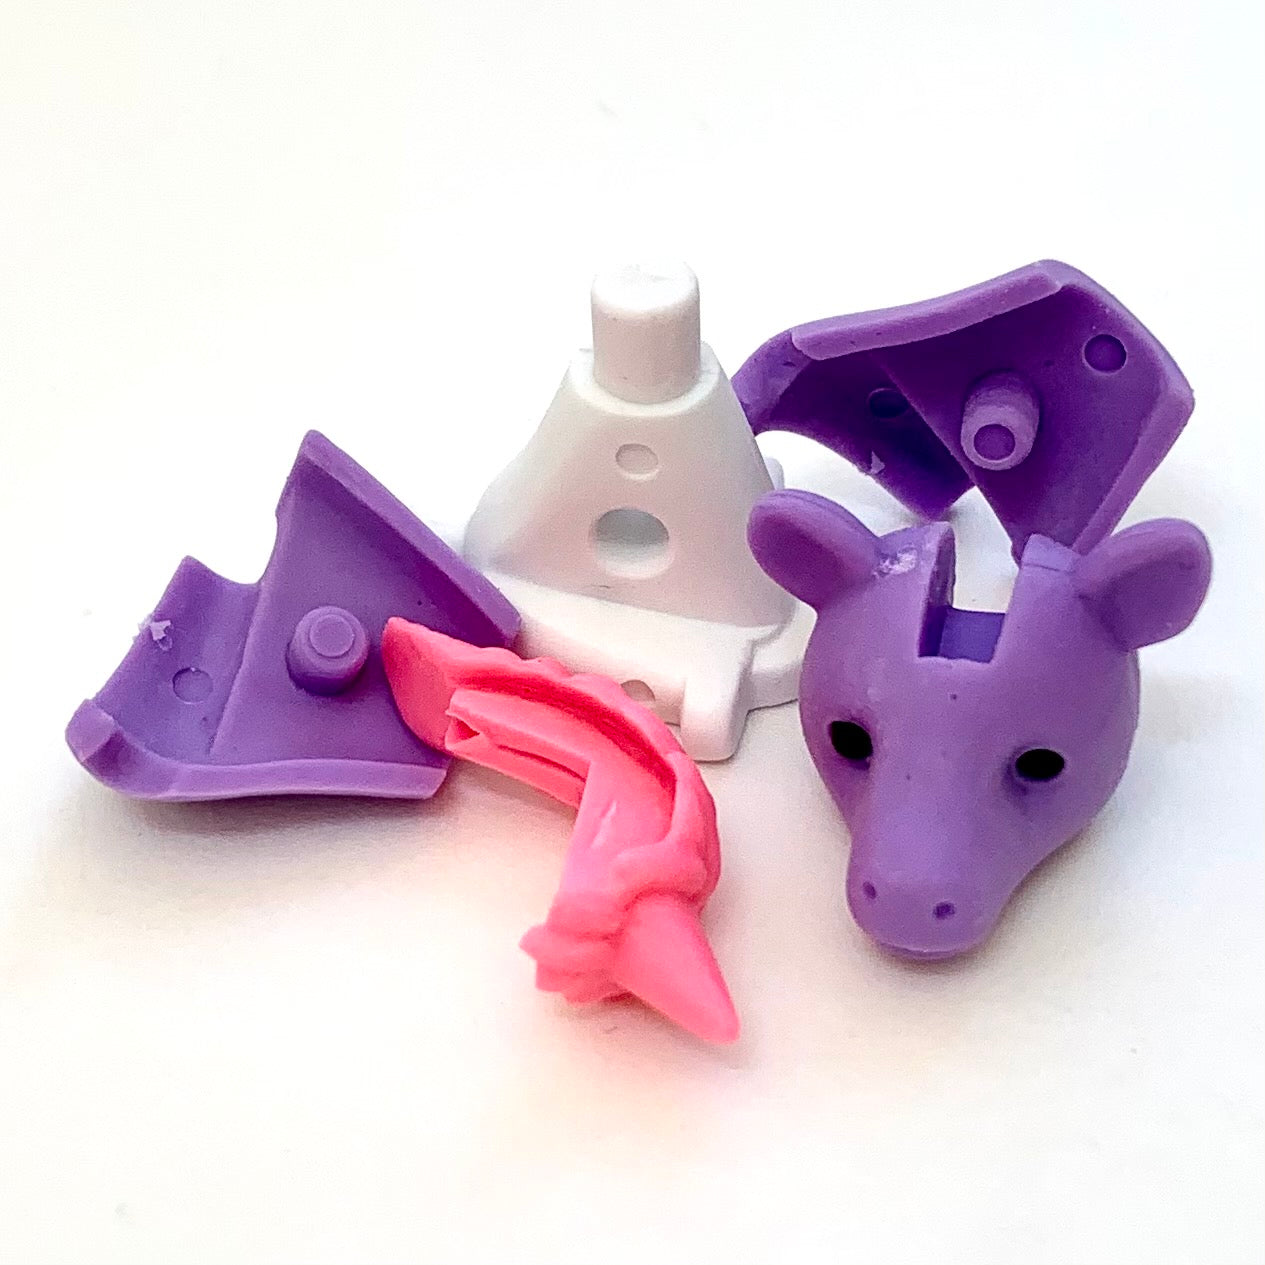 38452 IWAKO Colorz Unicorns -12 sets of 5 Erasers